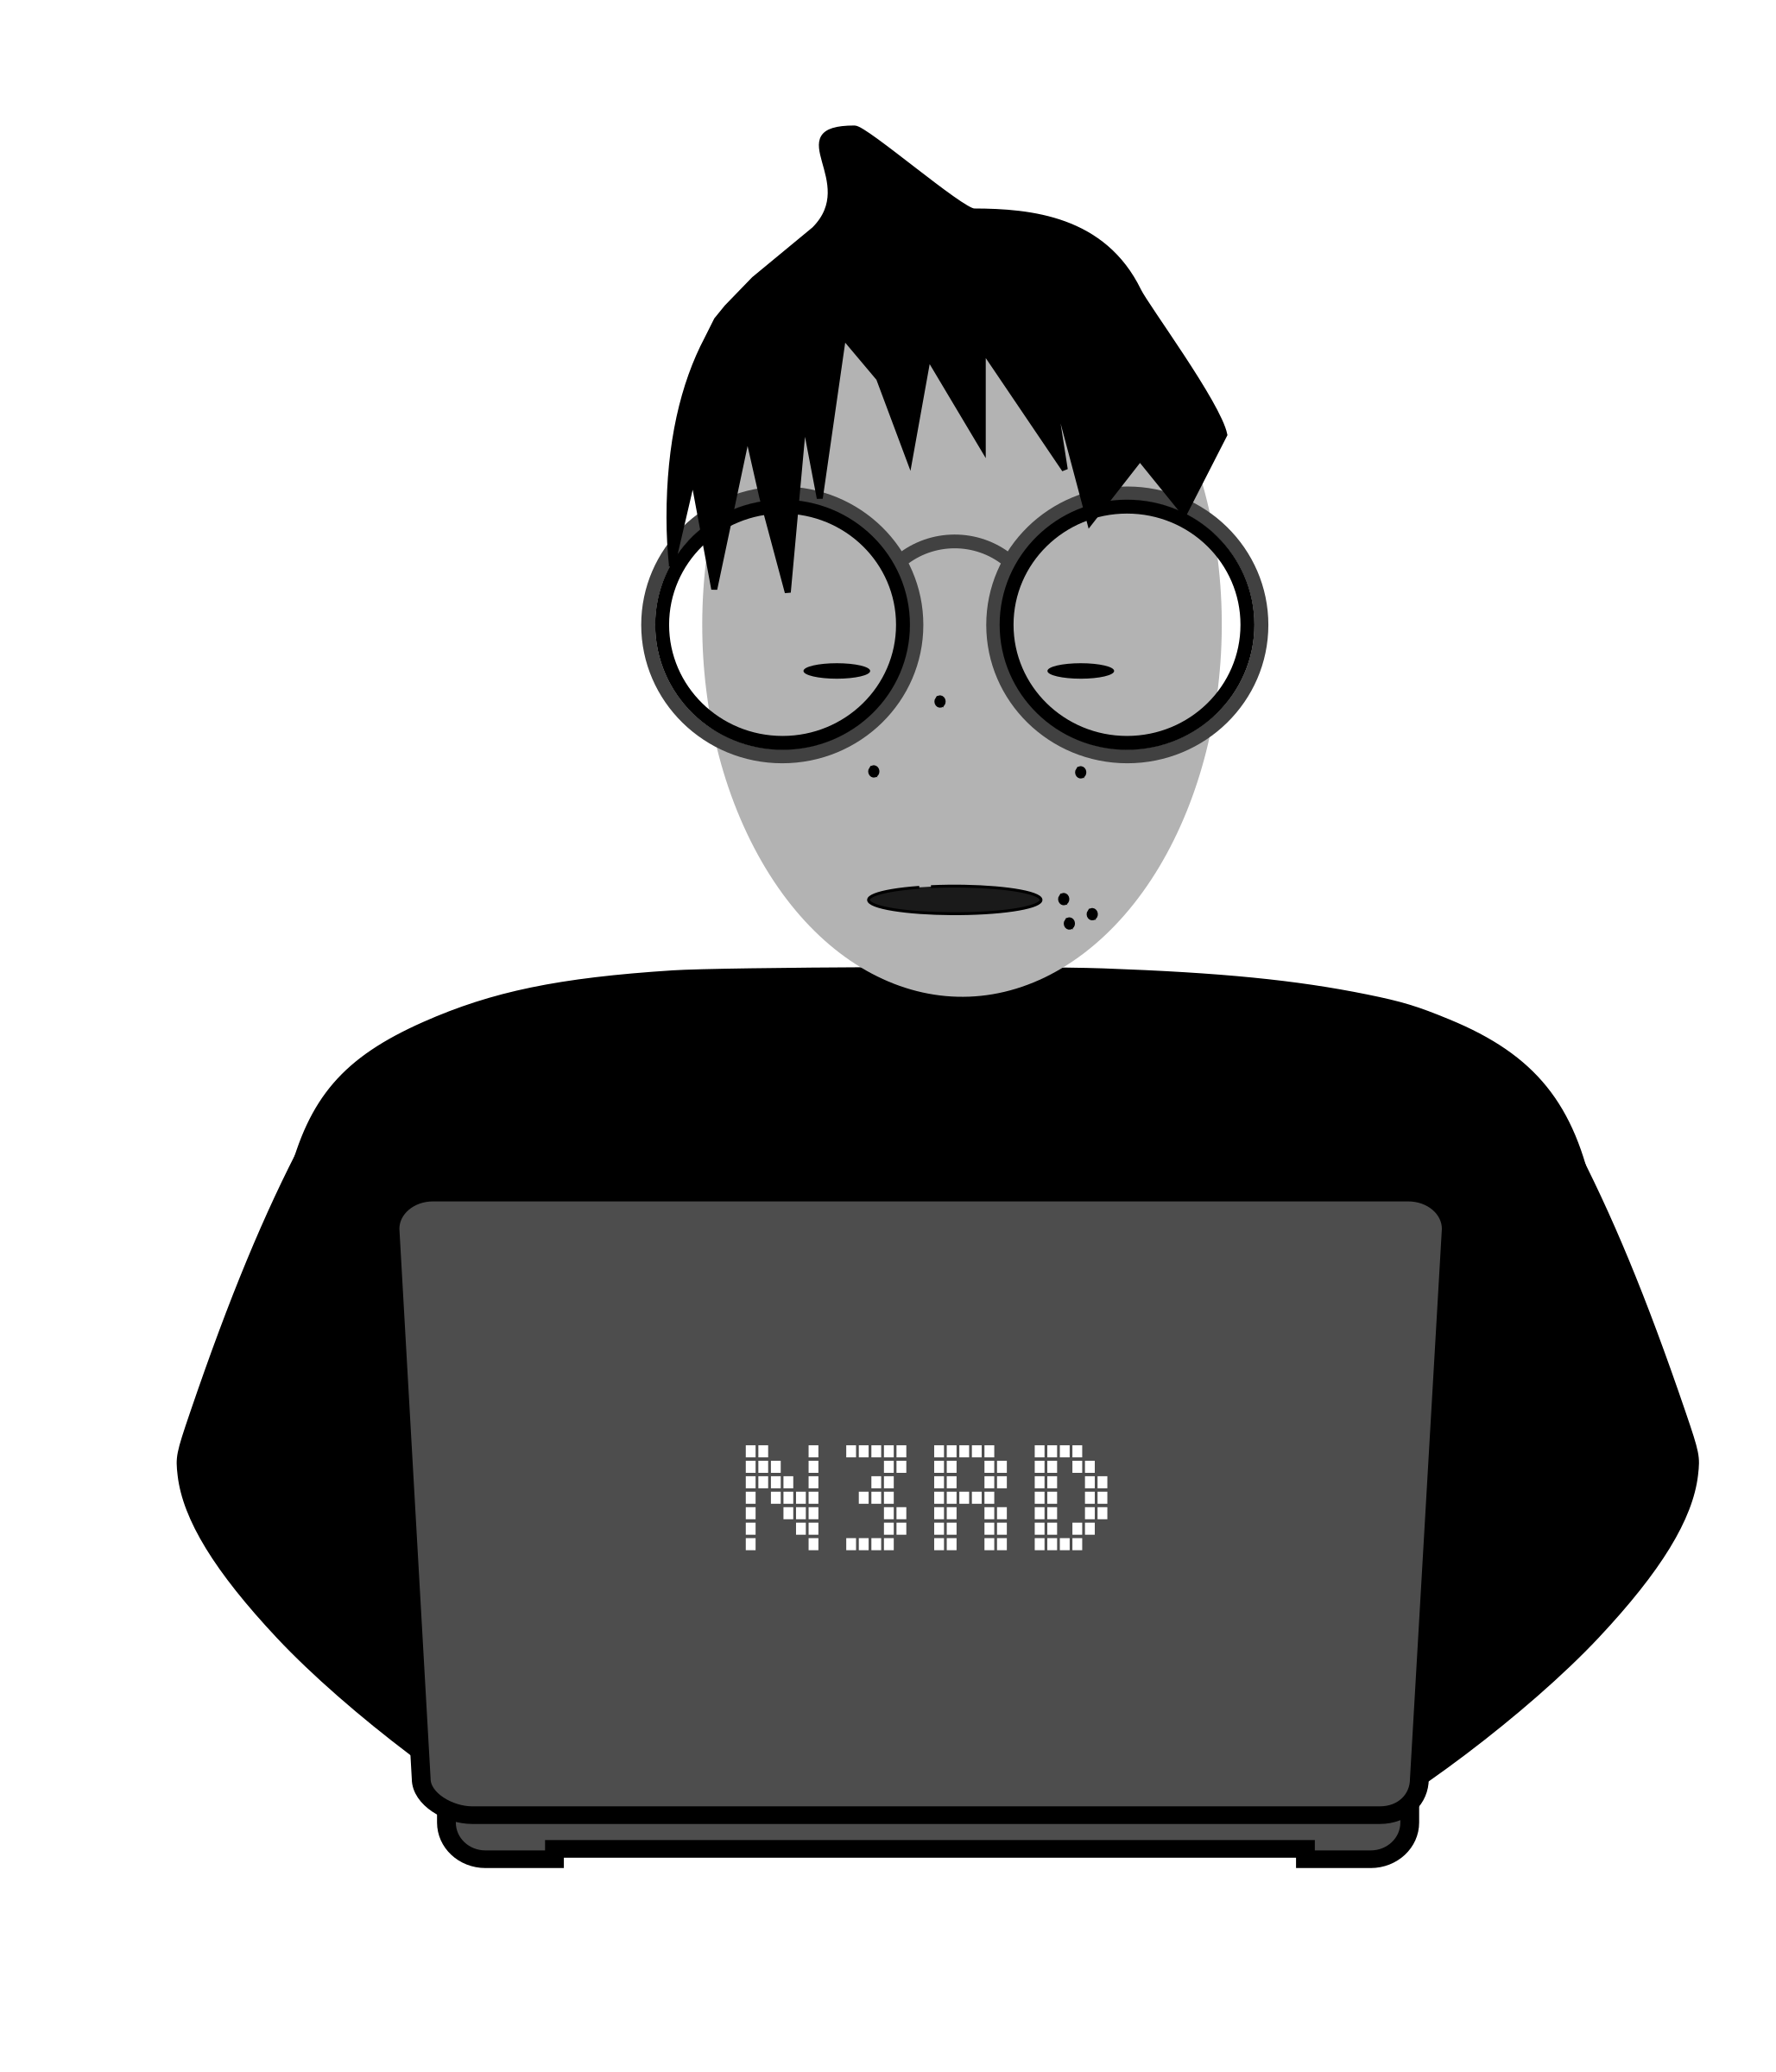 nerd clipart computer nerd